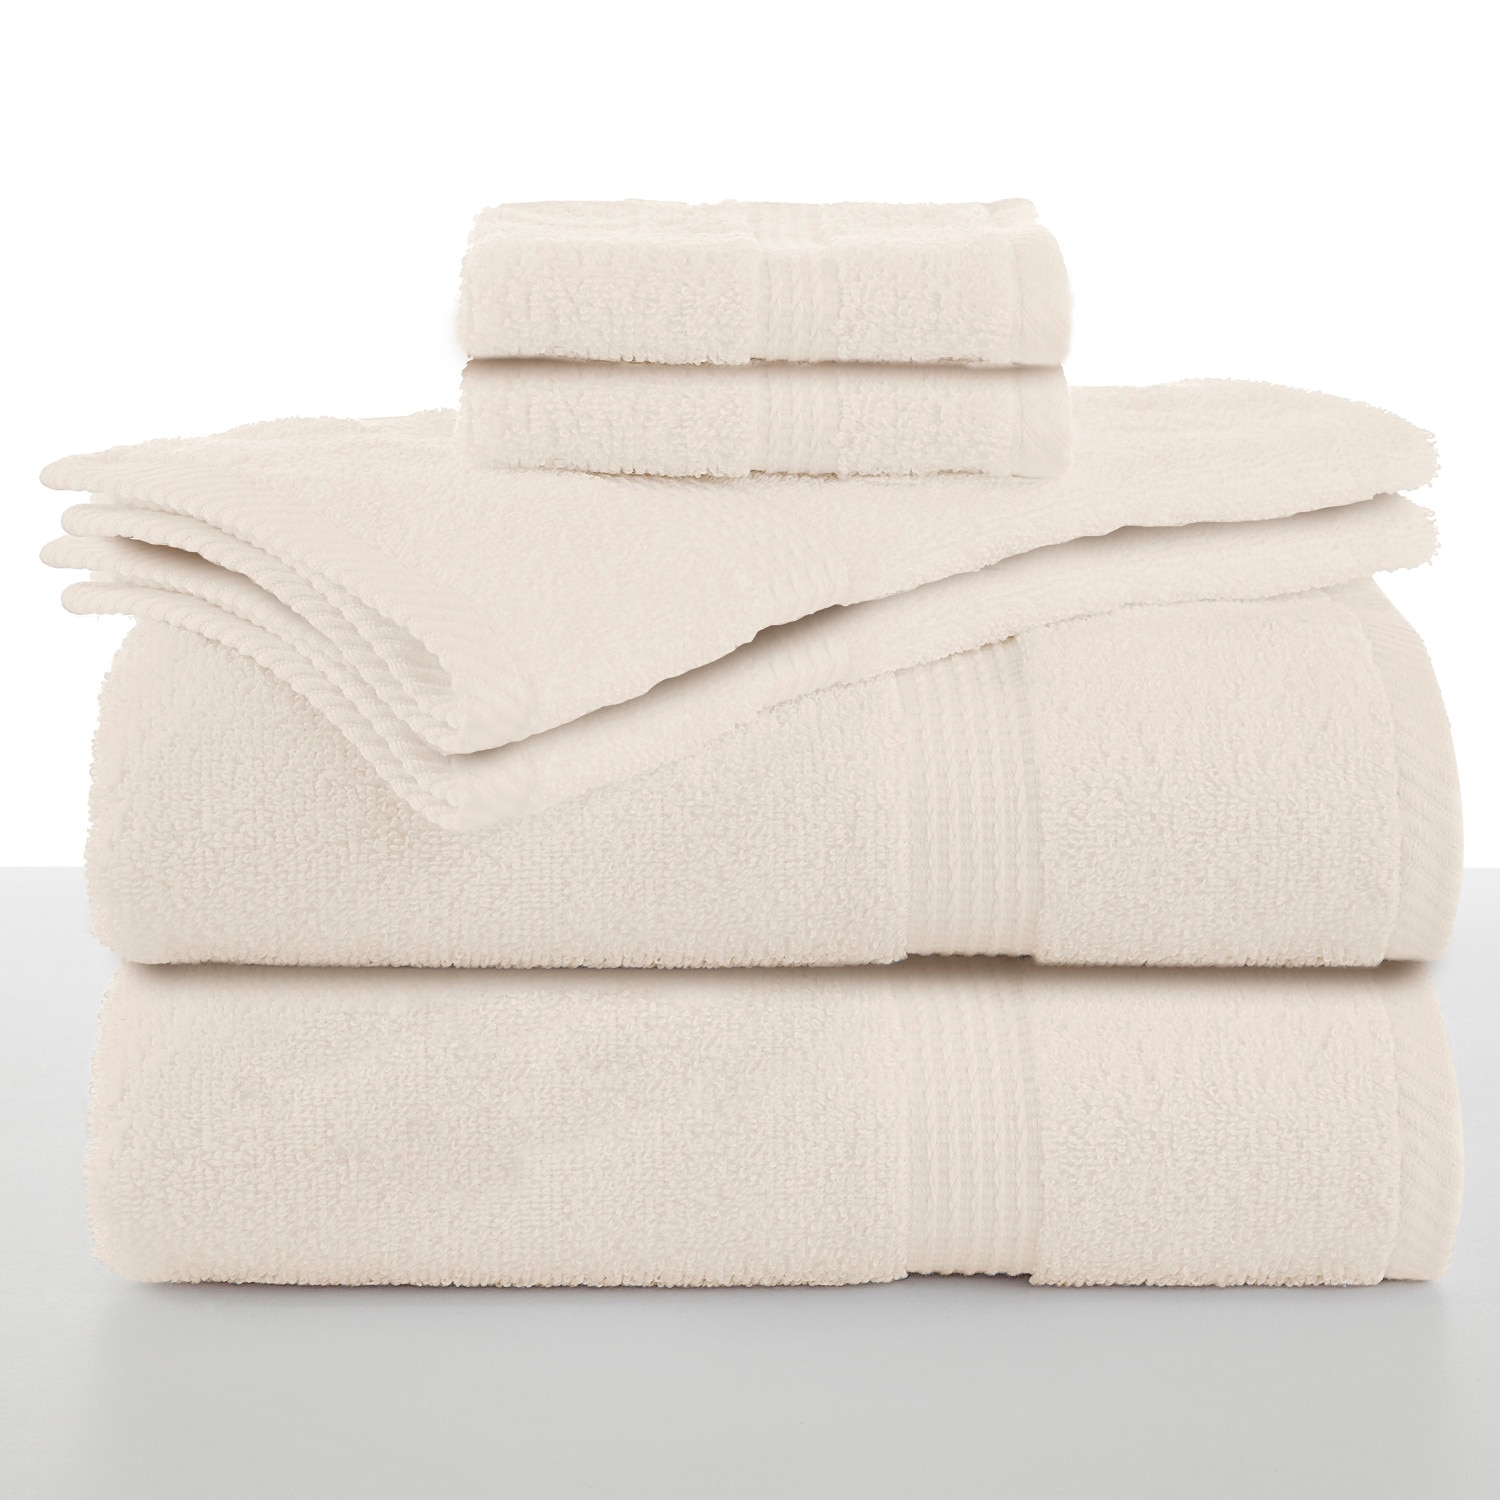 Utica Essentials 6-Piece Bath Towel Set